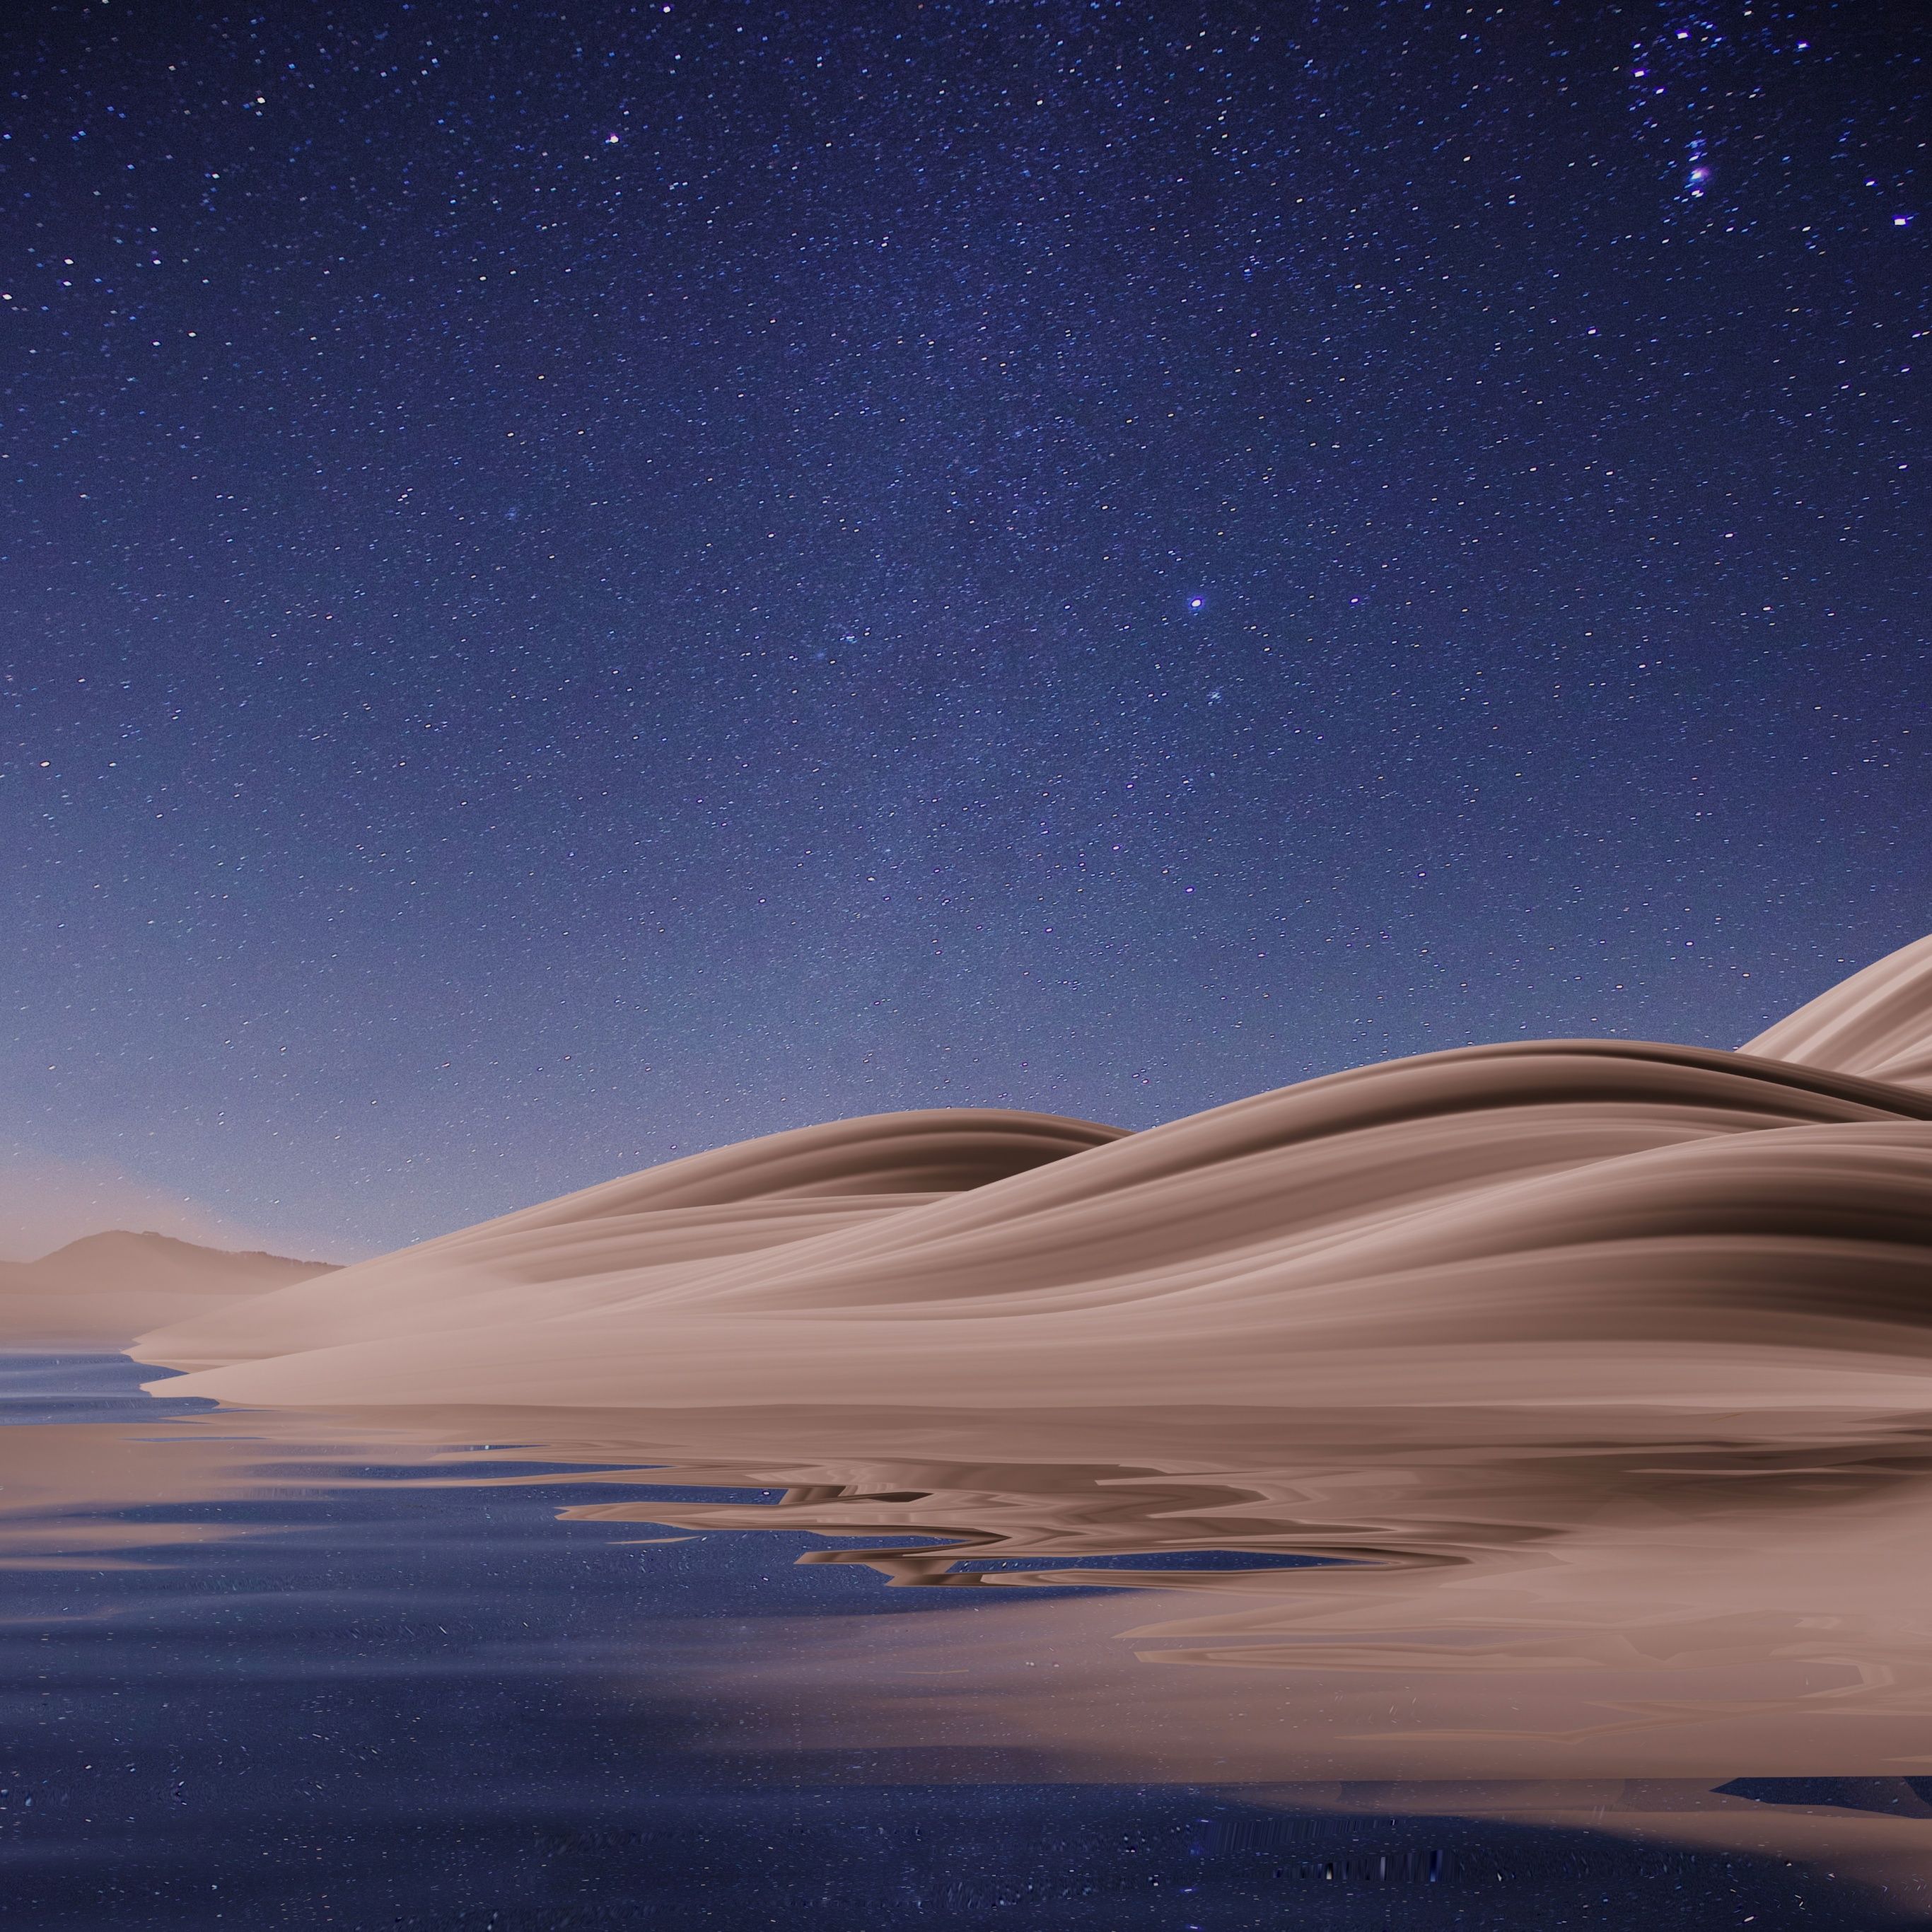 A sand dune under a starry sky - Desert